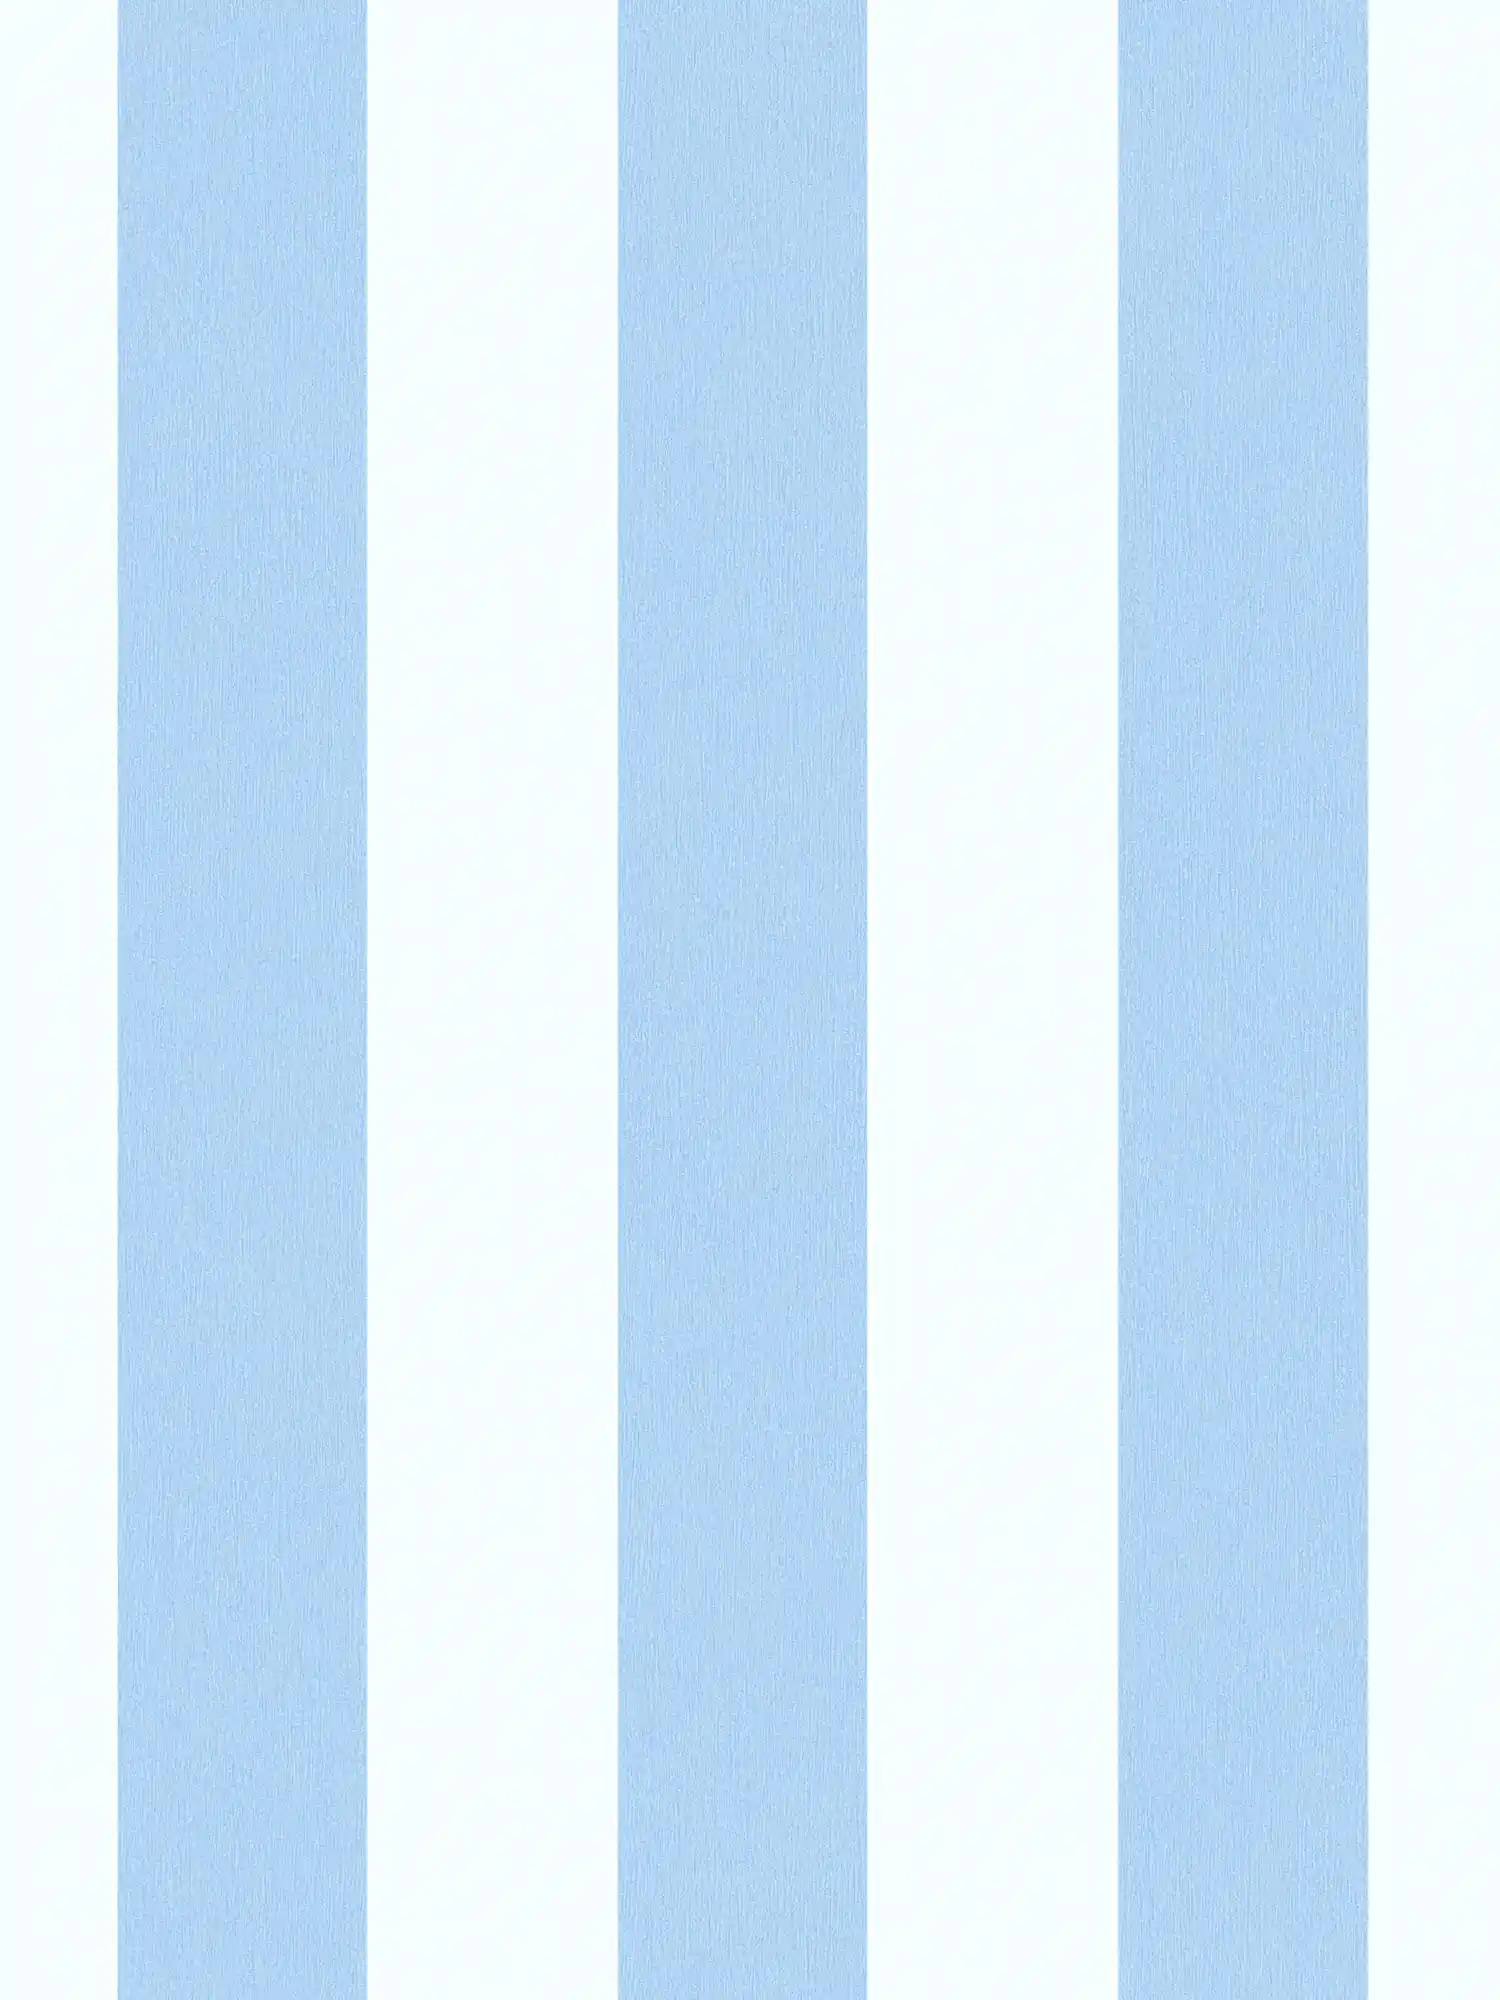 Tapete Kinderzimmer Junge senkrechte Streifen – Blau, Weiß
